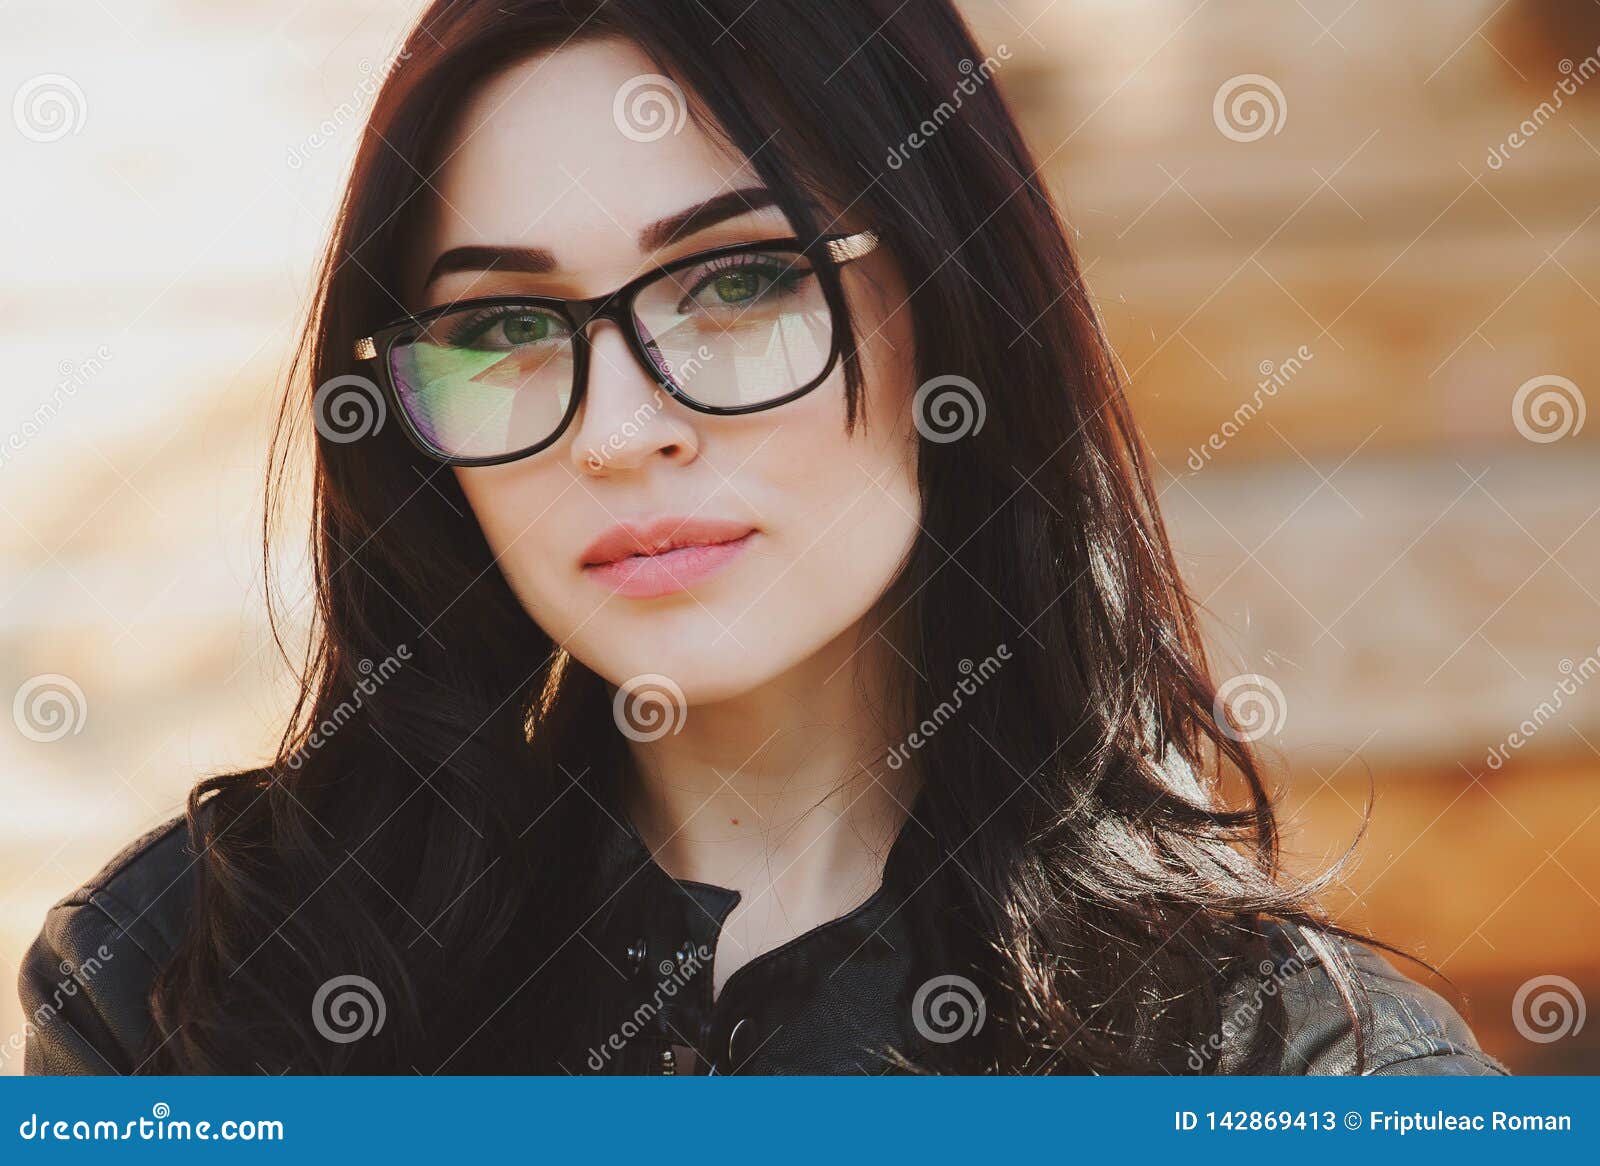 Brunette girls with glasses